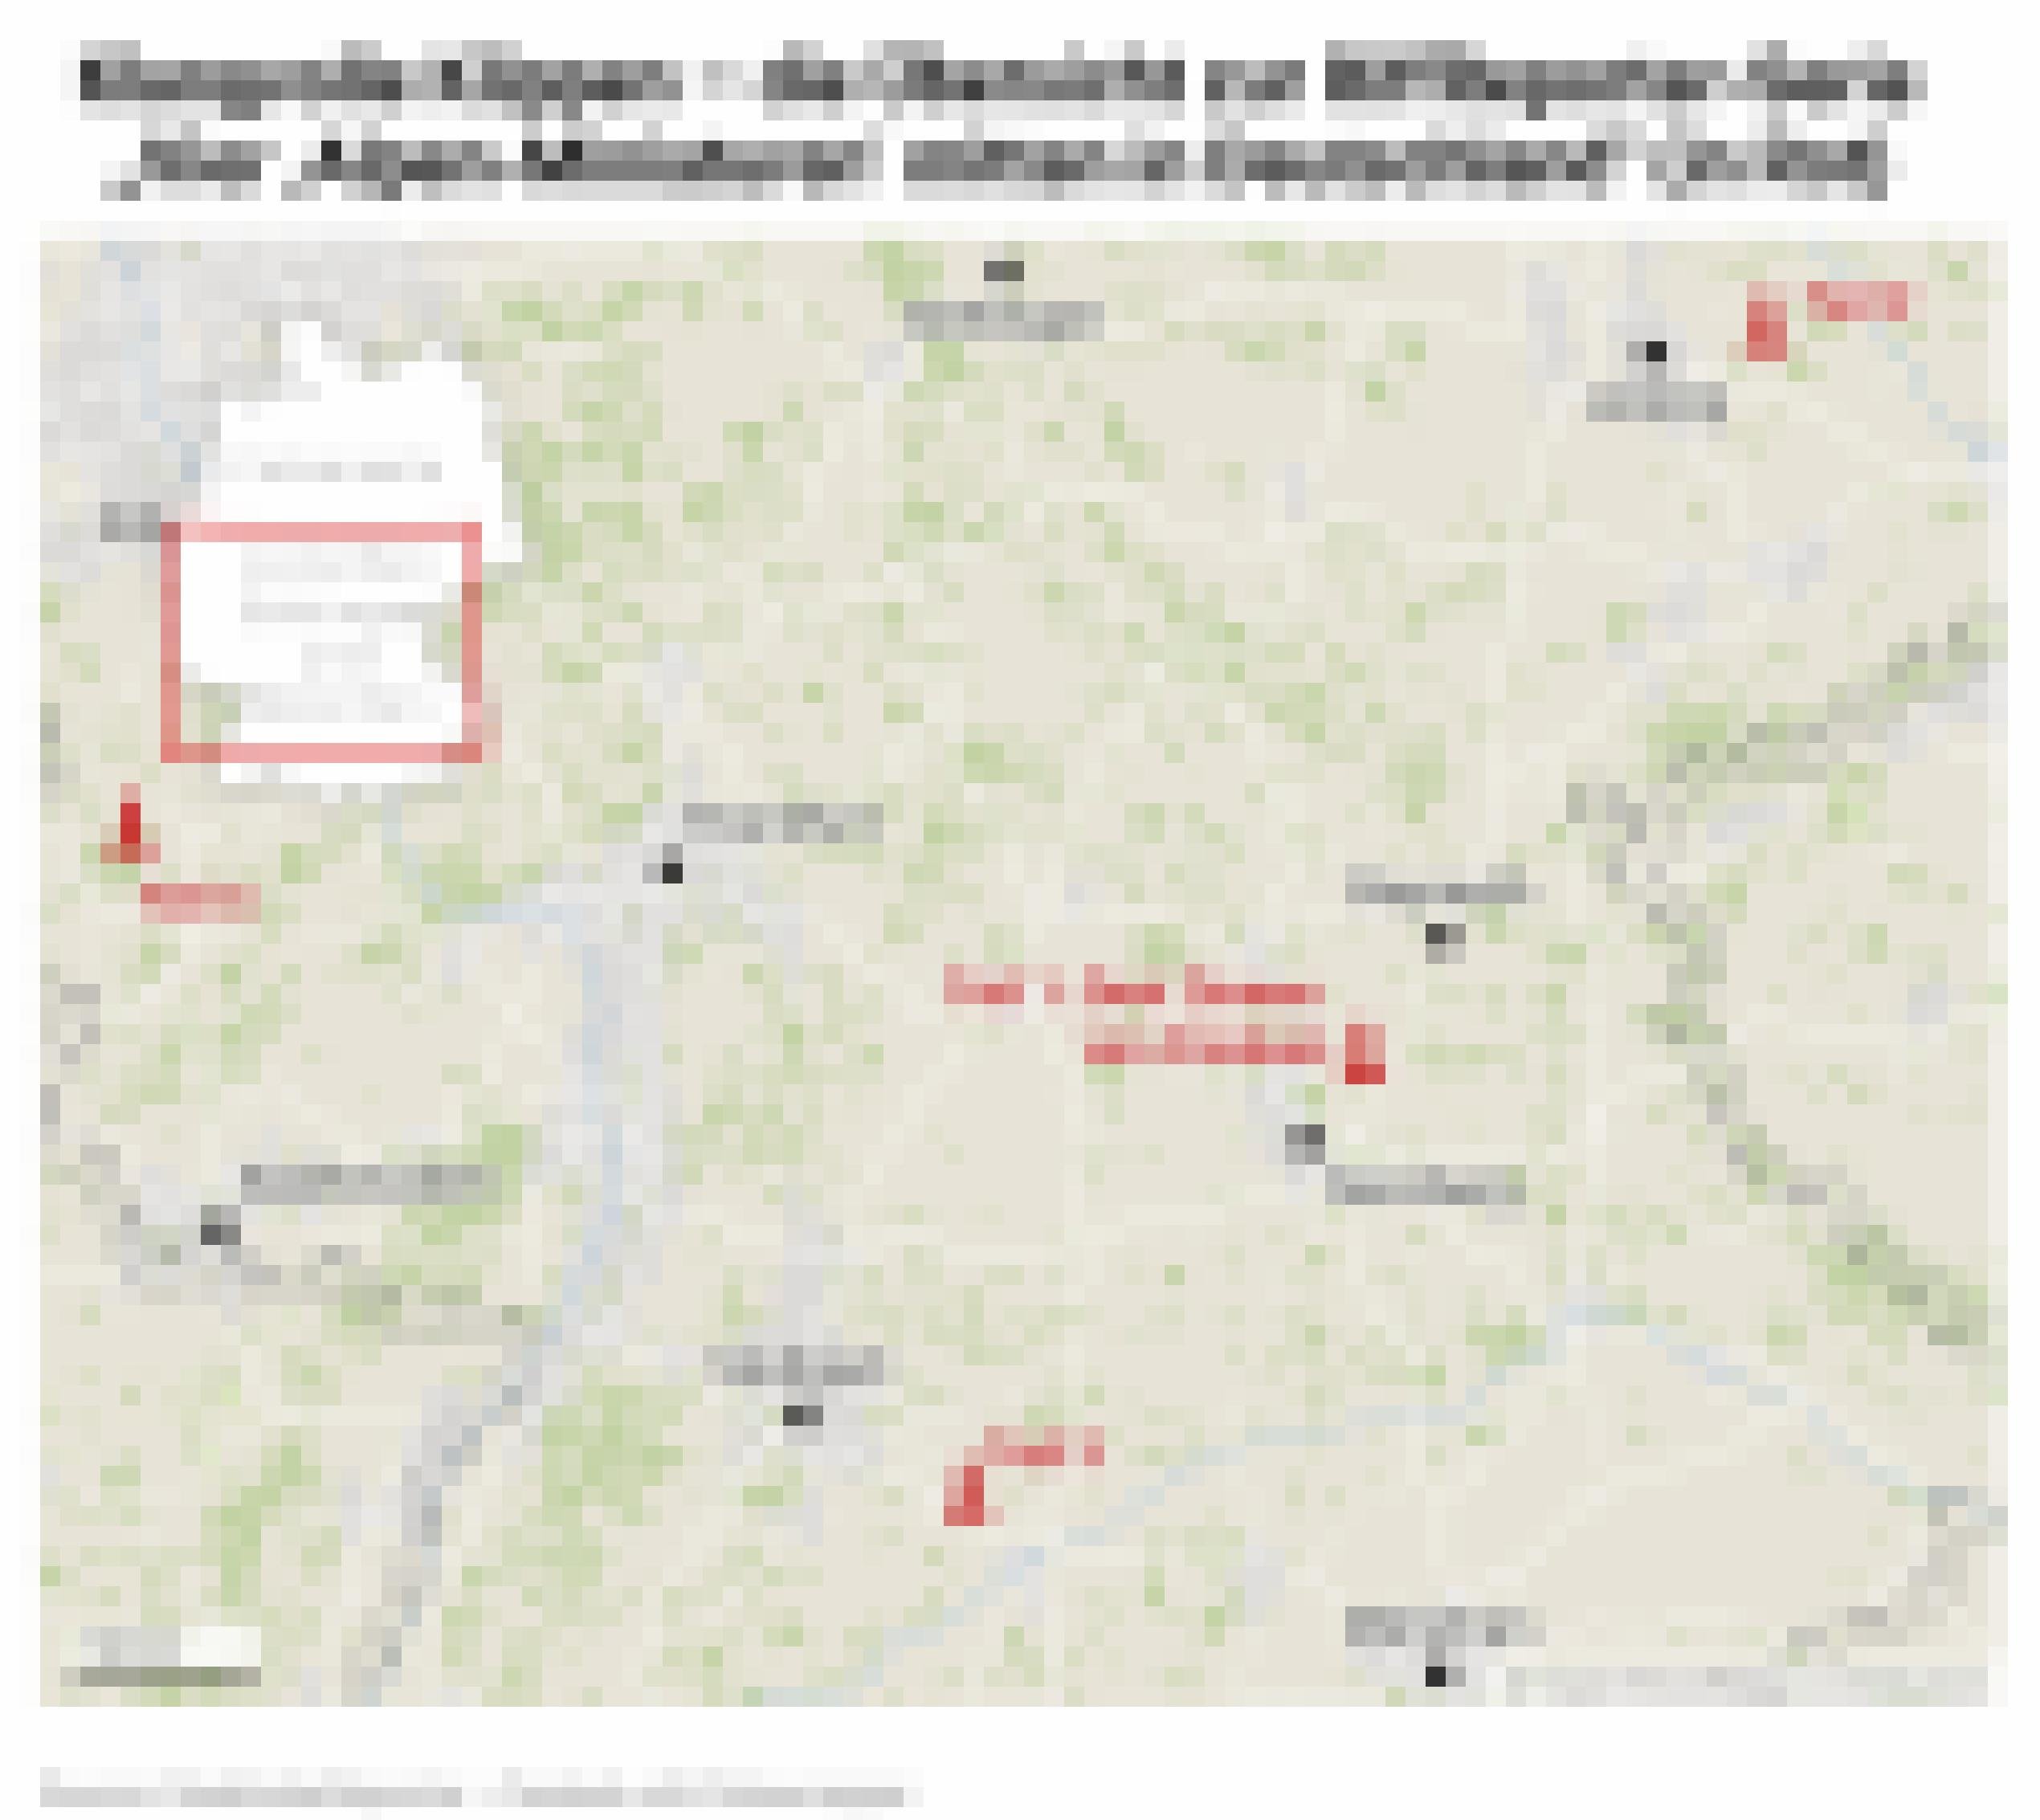 Übersichtskarte der Region zwischen Göttingen und München, auf der neben einigen Metropolen die vier Geotope der Serie im Riff-Magazin „Das schöne Leben“ eingetragen sind; Nummer 1 trägt die Bezeichnung „Drei Zinnen von Franken“.